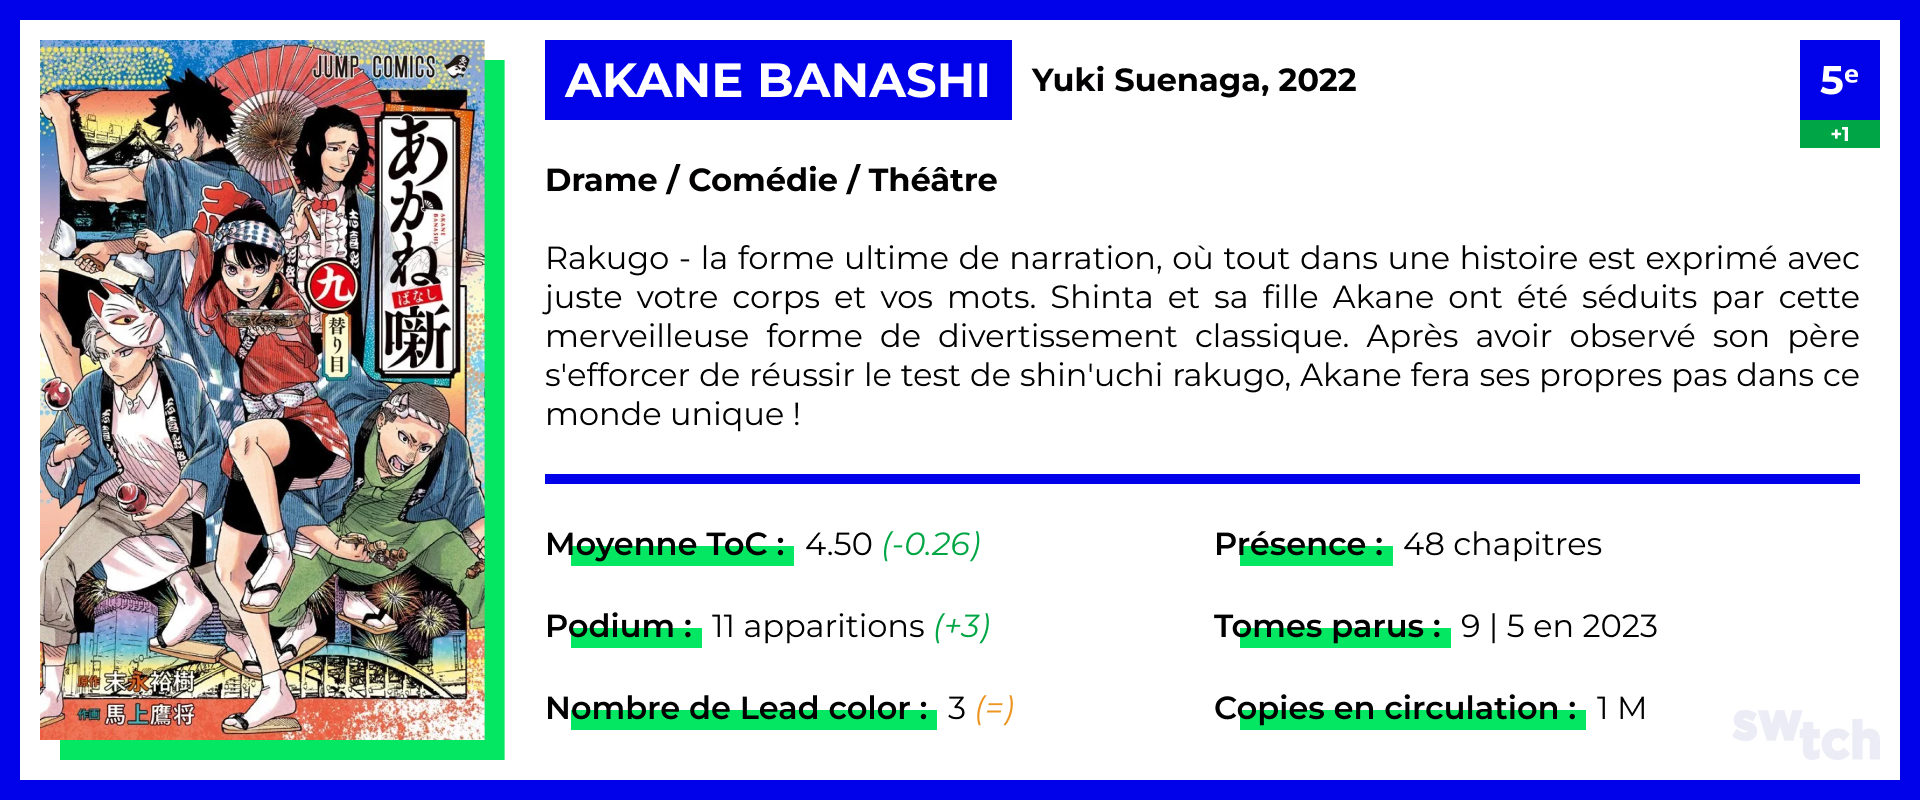 Akane Banashi